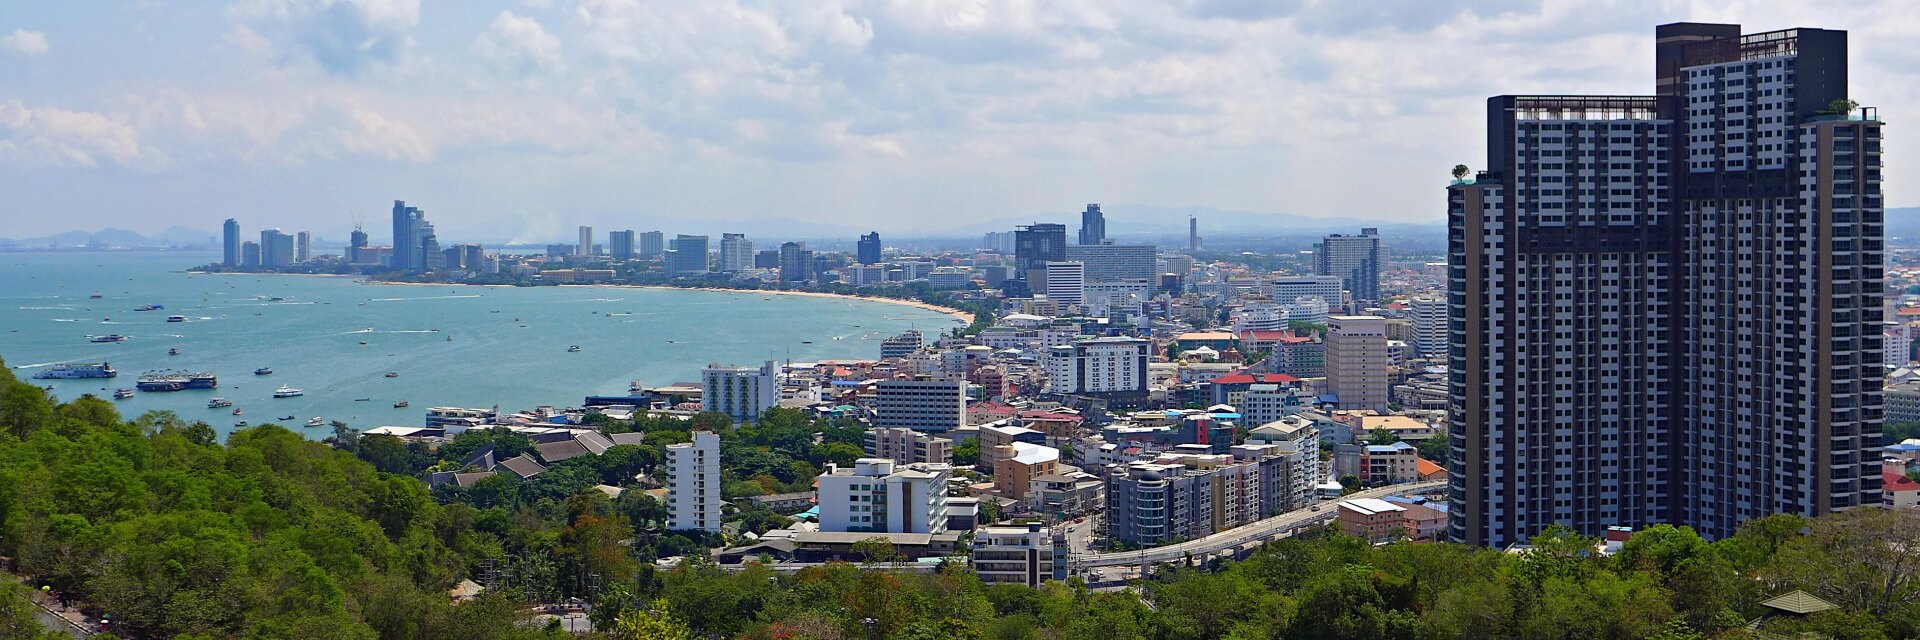 View of Pattaya